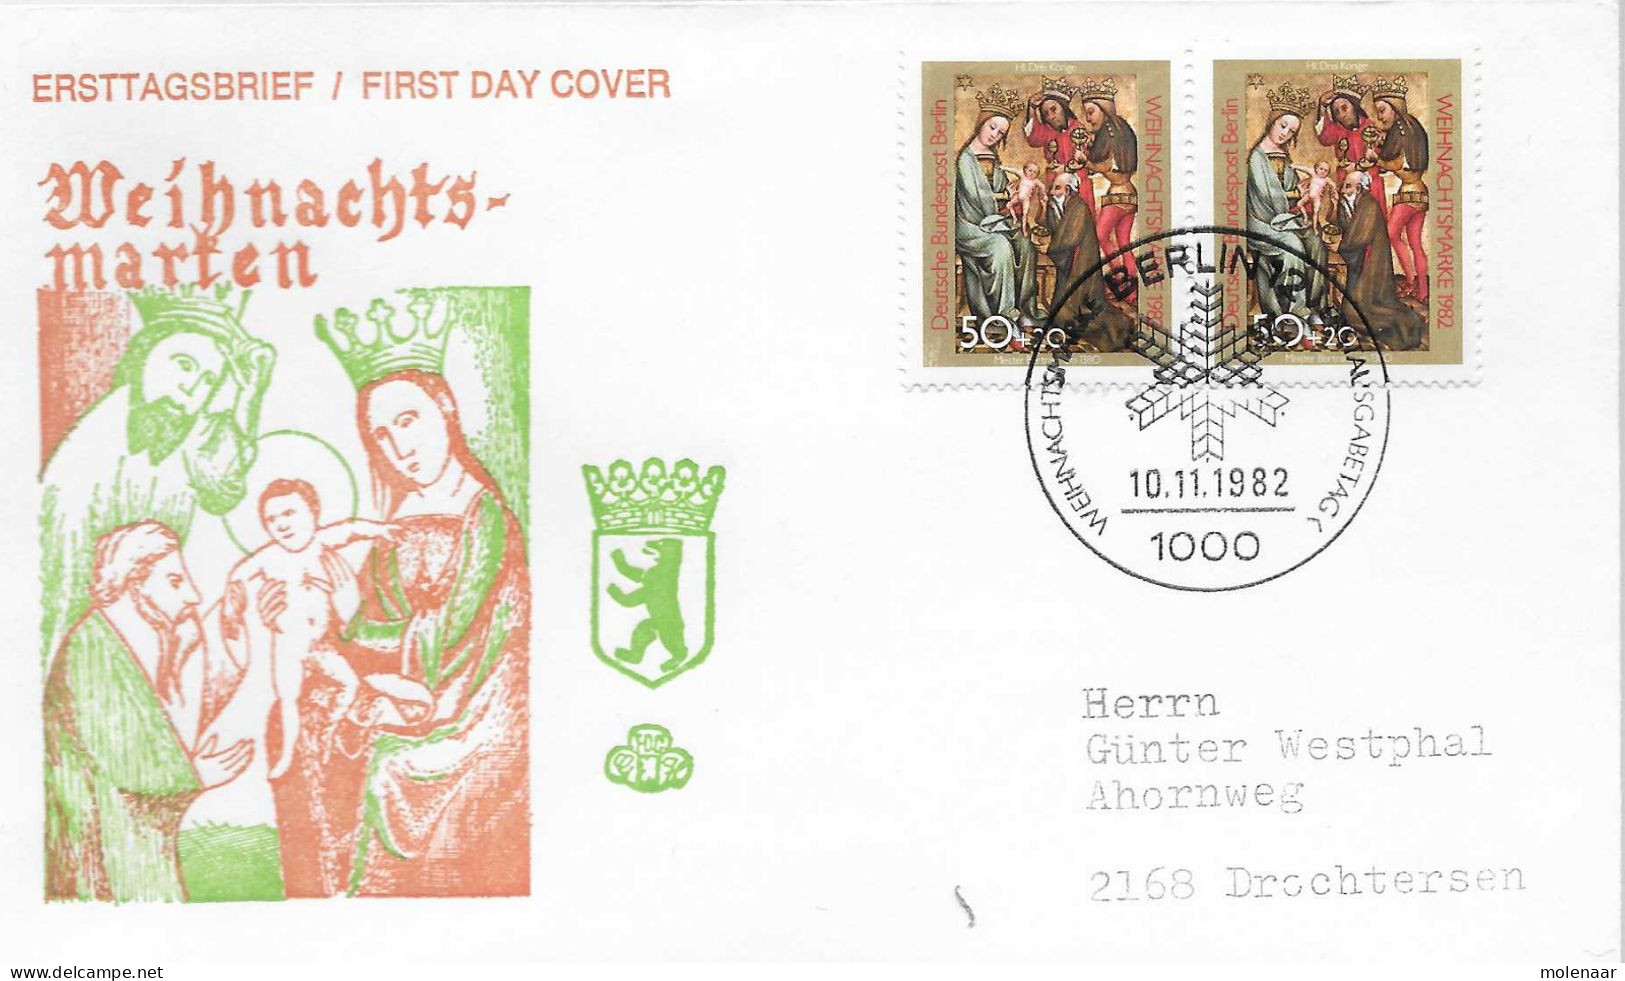 Postzegels > Europa > Duitsland > Berlijn > 1980-1990> Brief Met No. 698 2x (17184) - Briefe U. Dokumente